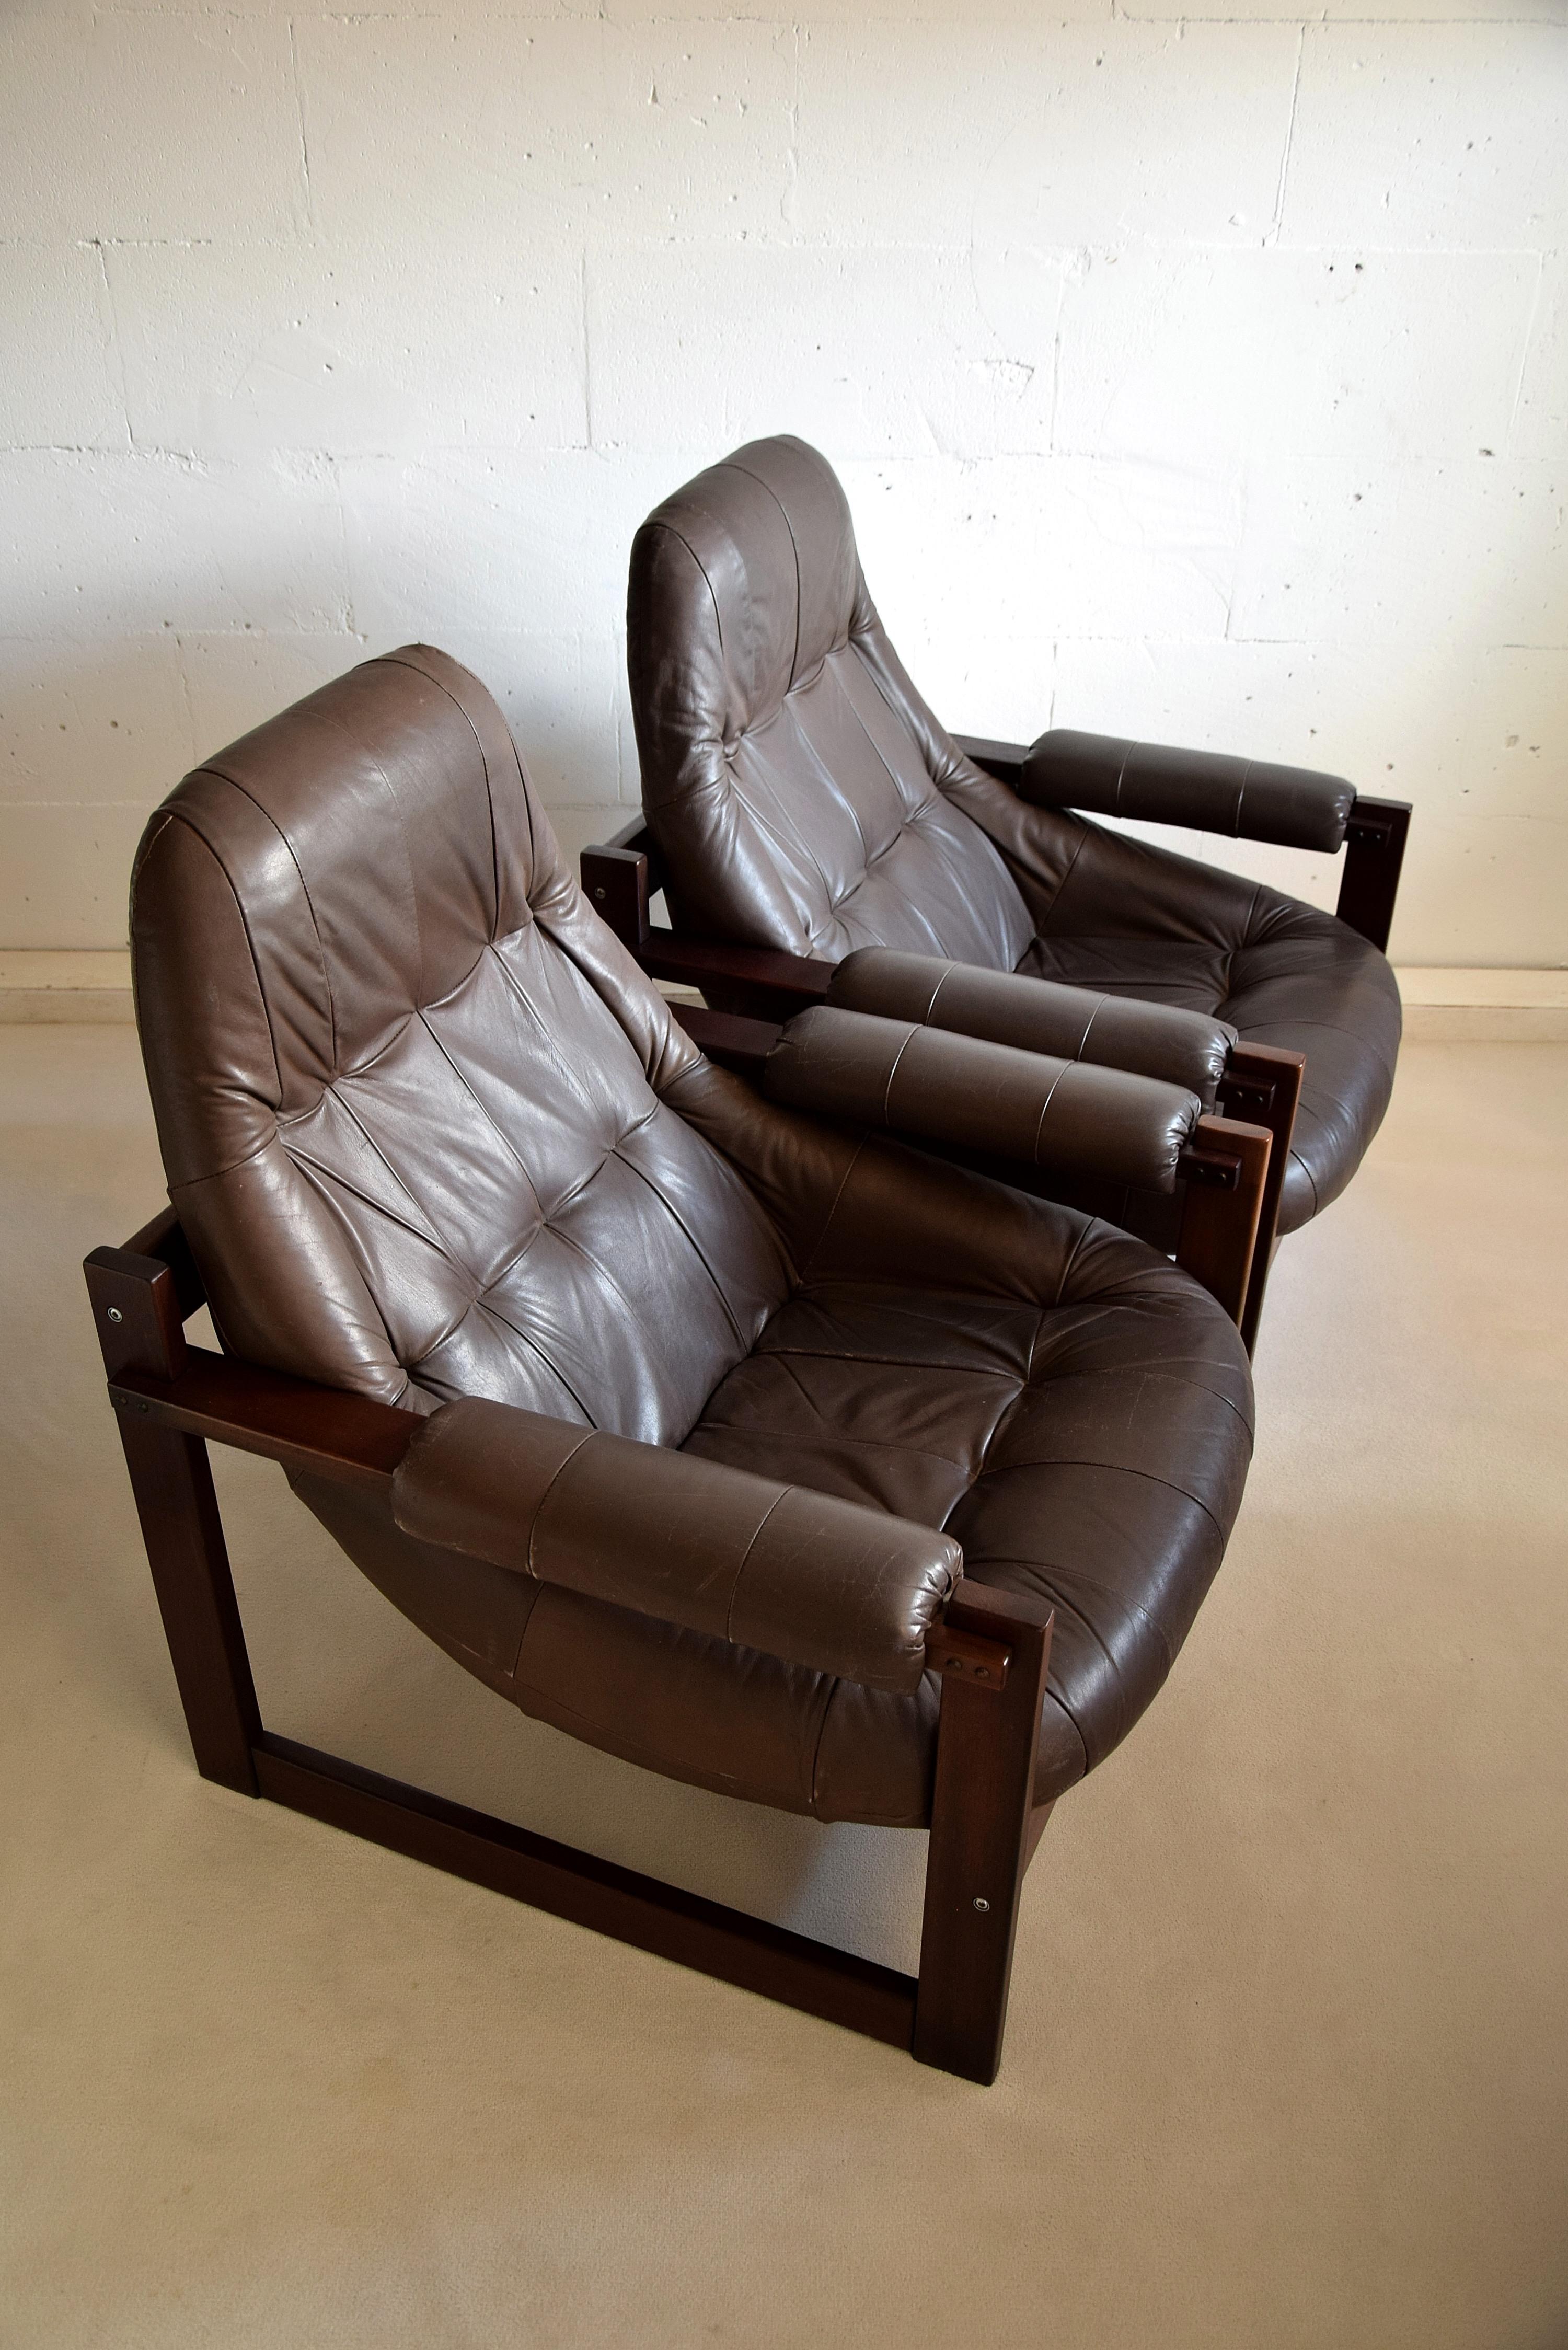 Vous cherchez un complément élégant pour votre maison ou votre bureau ? Découvrez ces superbes chaises longues modernes du milieu du siècle dernier créées par Percival Lafer et fabriquées avec soin à São Paolo, au Brésil. Les chaises présentent une